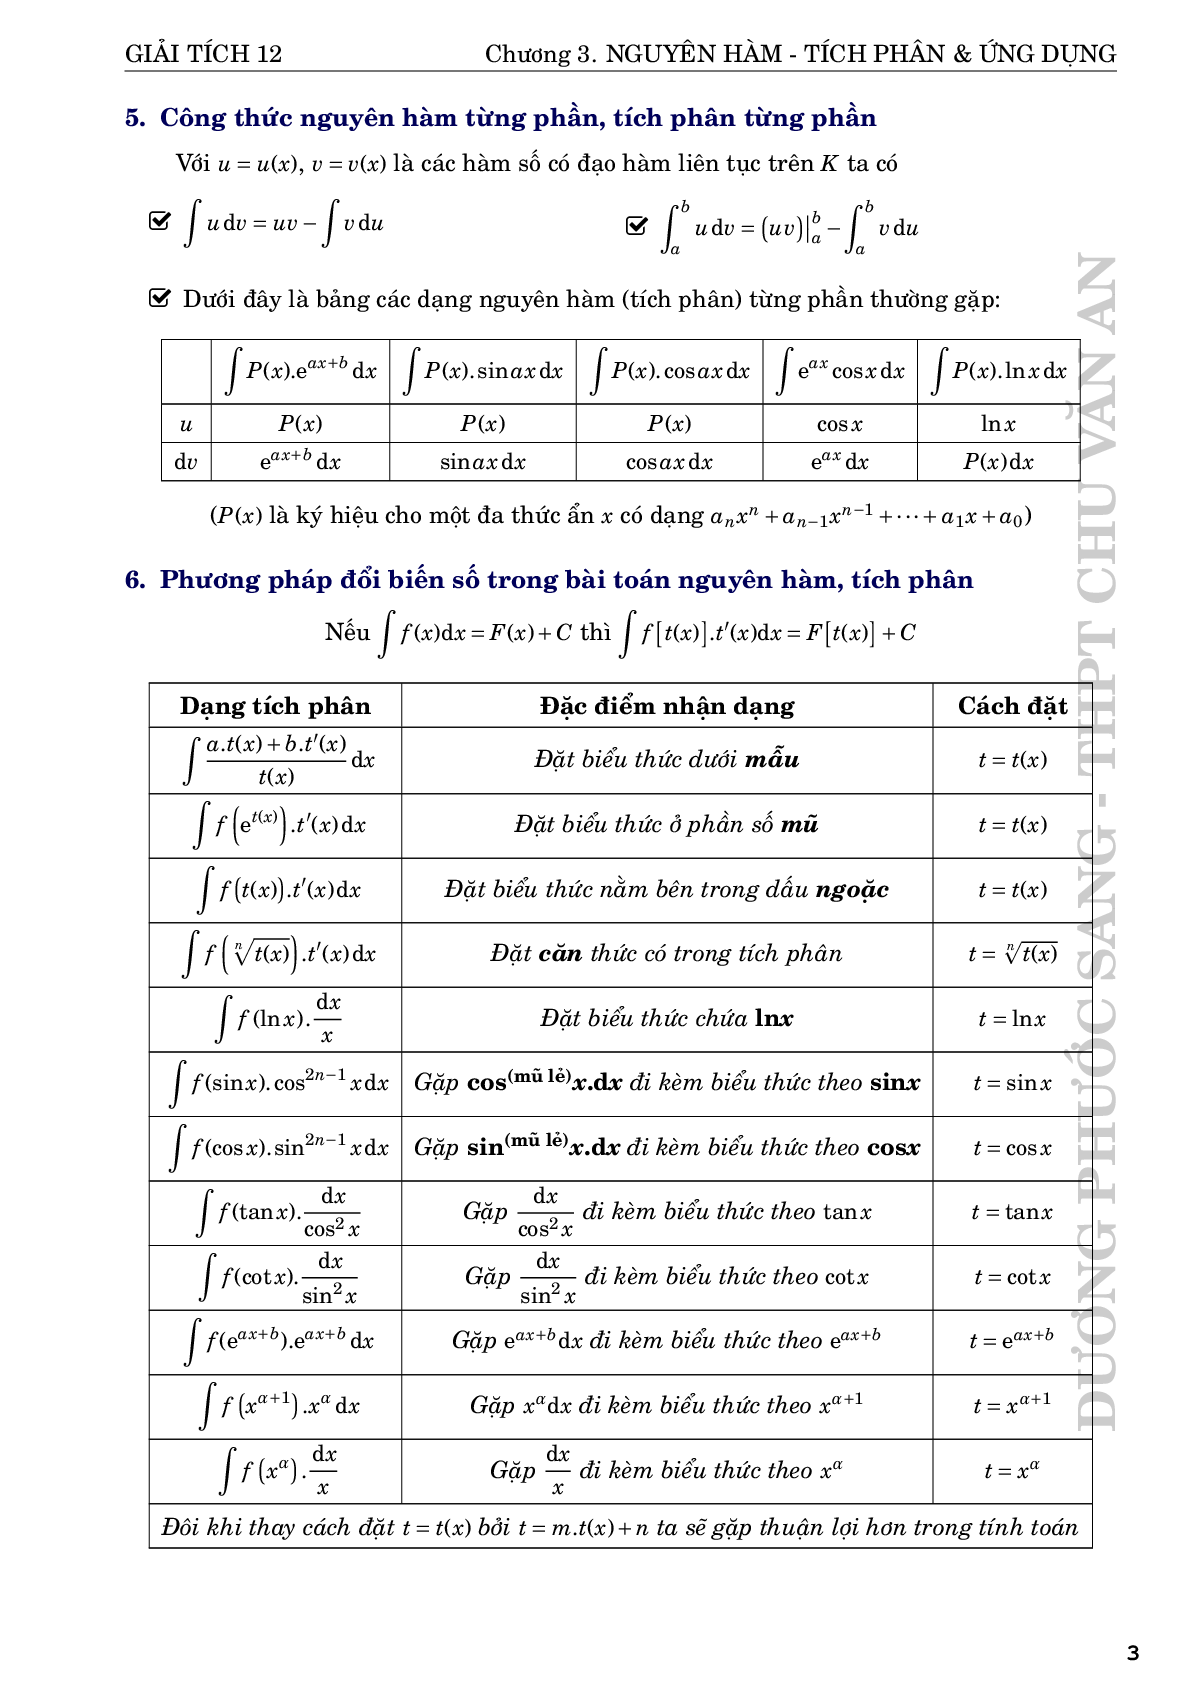 Nguyên hàm tích phân và ứng dụng - Dương Phước Sang (trang 3)